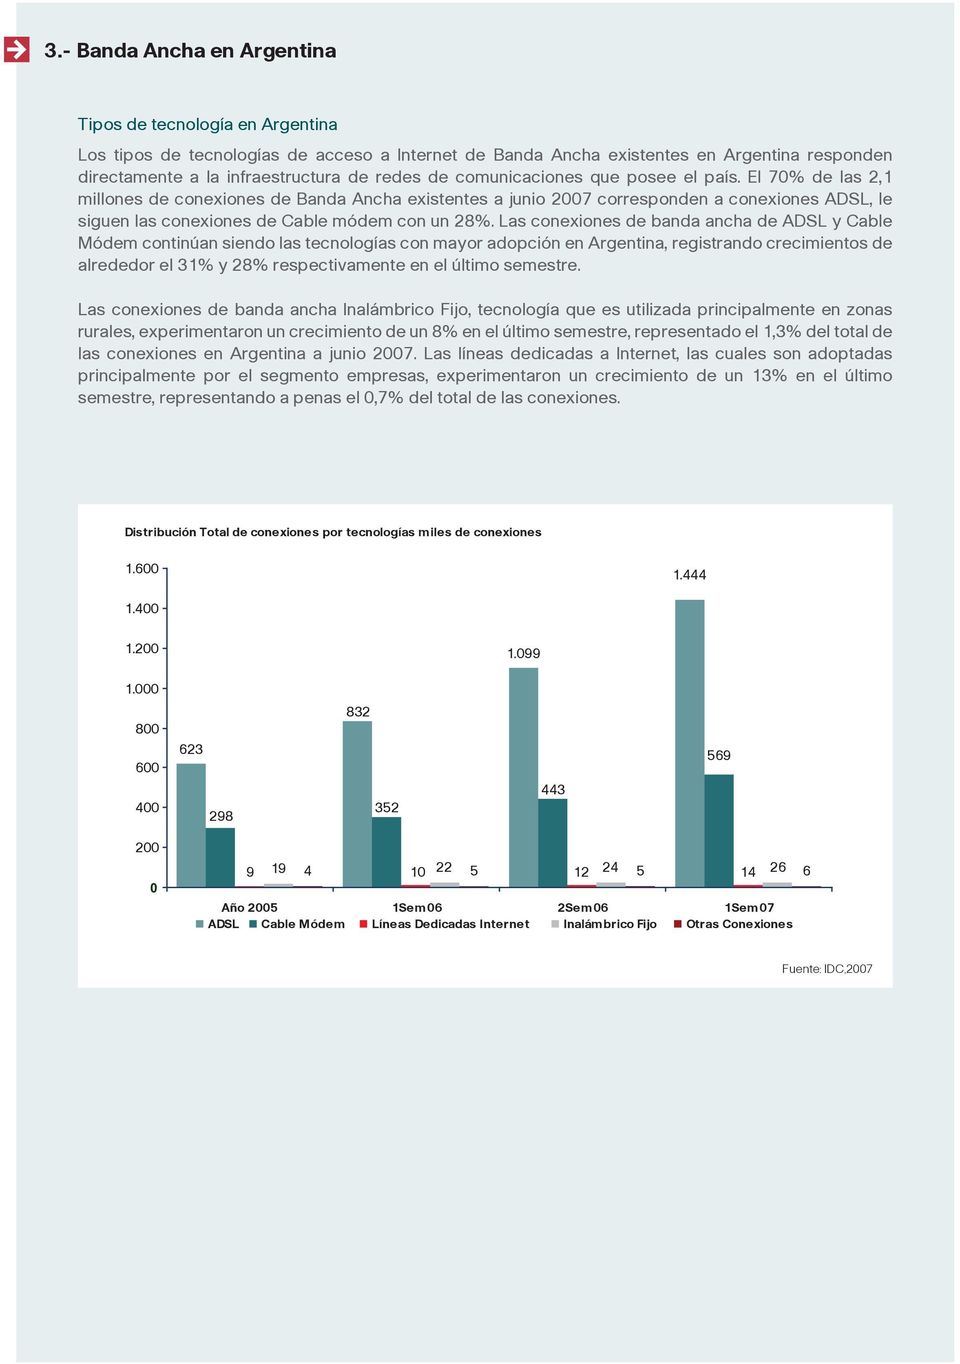 Las conexiones de banda ancha de ADSL y Cable Módem continúan siendo las tecnologías con mayor adopción en Argentina, registrando crecimientos de alrededor el 31% y 28% respectivamente en el último